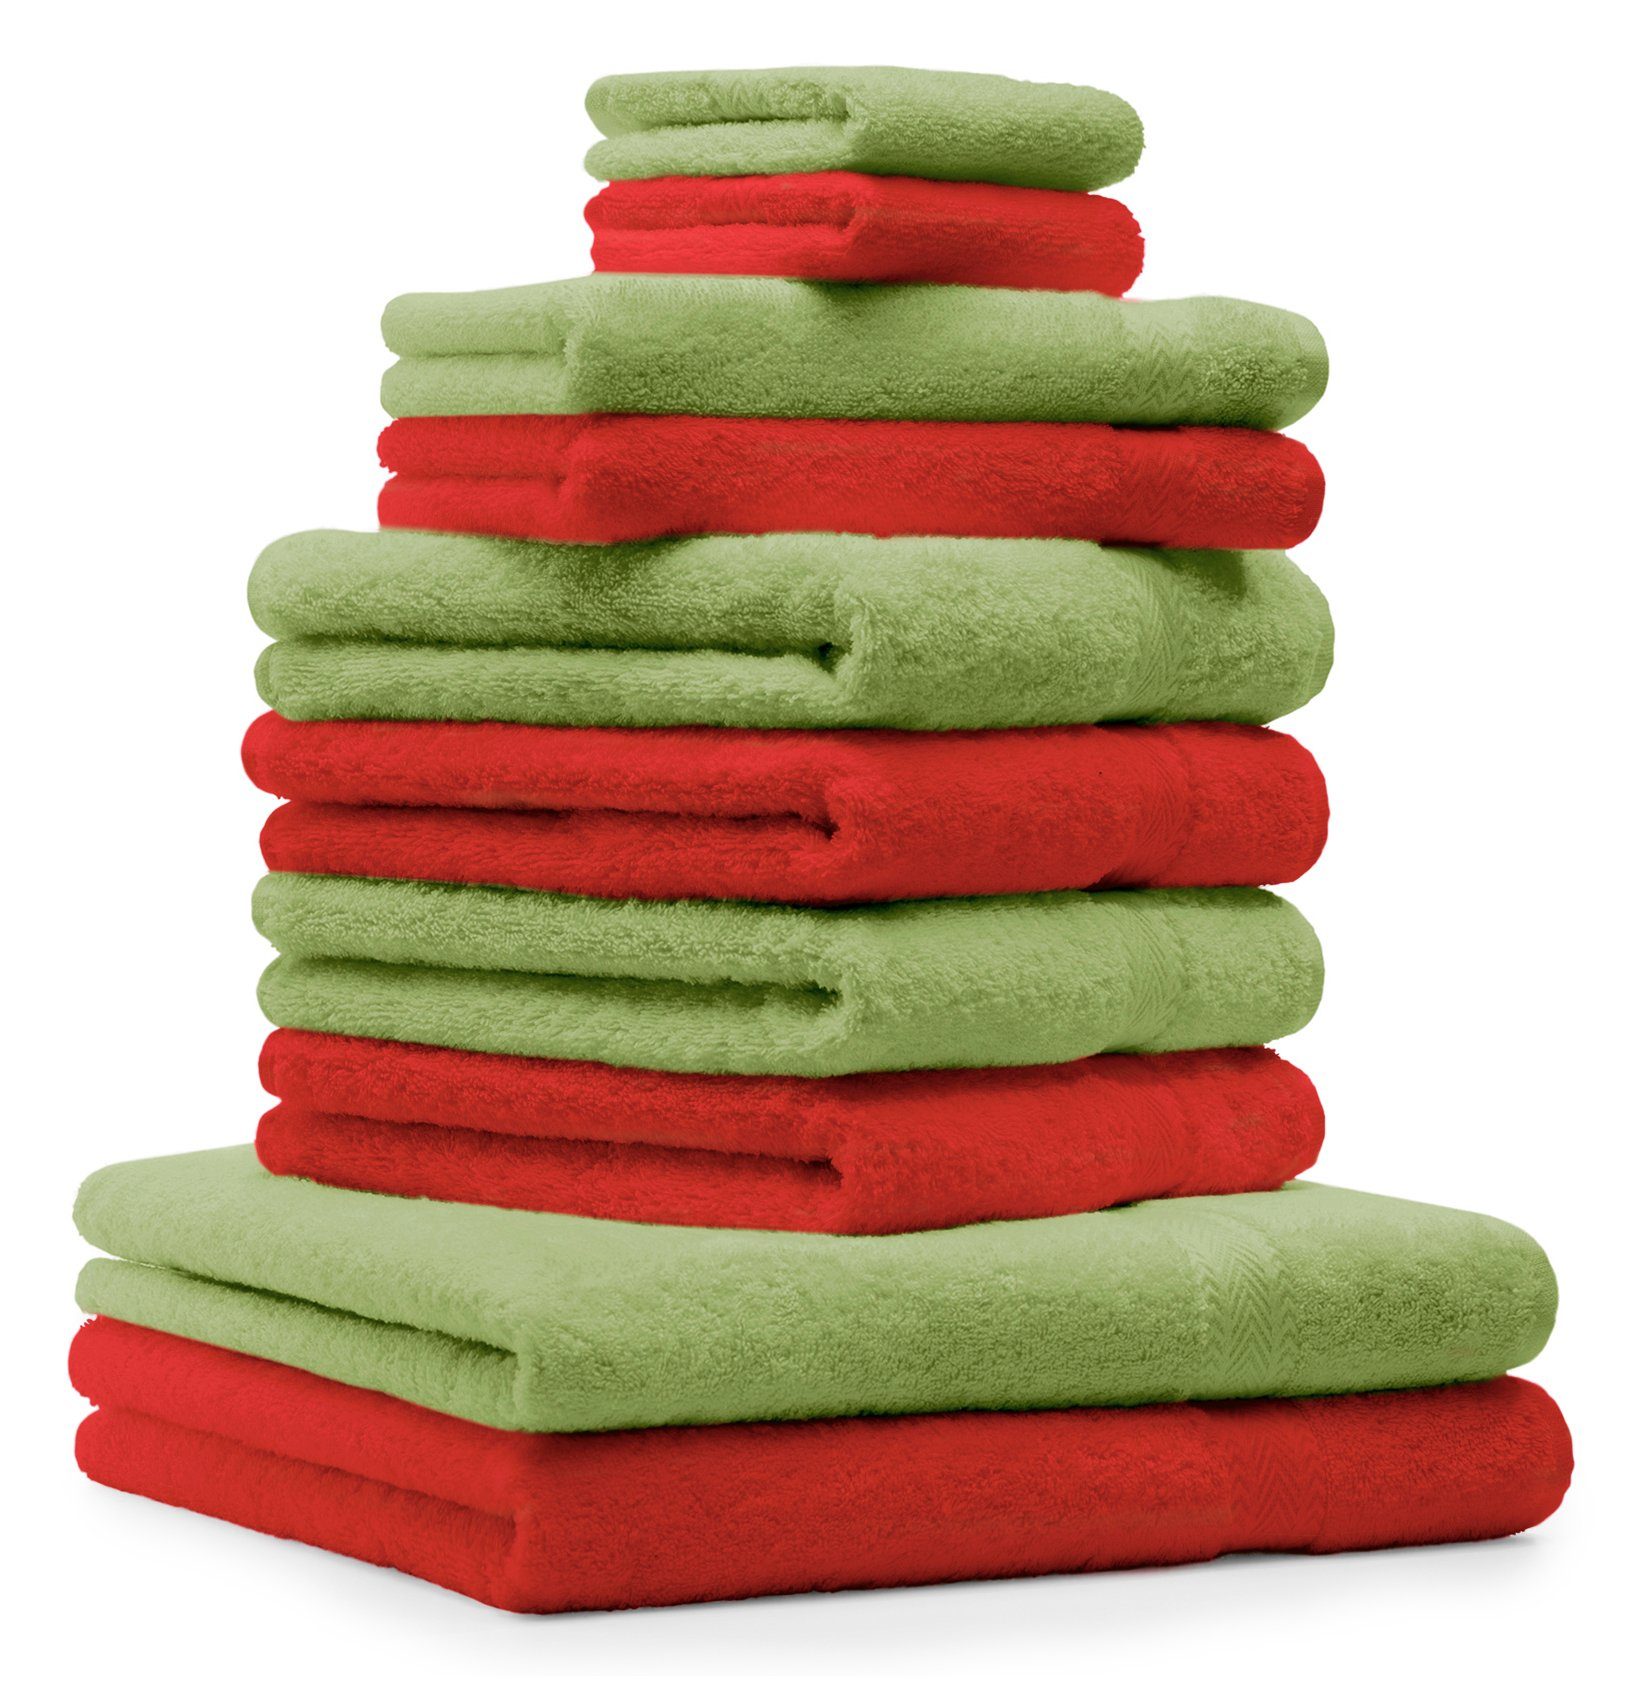 Betz Handtuch Set 10-TLG. Handtuch-Set Premium 100% Baumwolle 2 Duschtücher 4 Handtücher 2 Gästetücher 2 Waschhandschuhe Farbe rot und apfelgrün, 100% Baumwolle, (10-tlg)